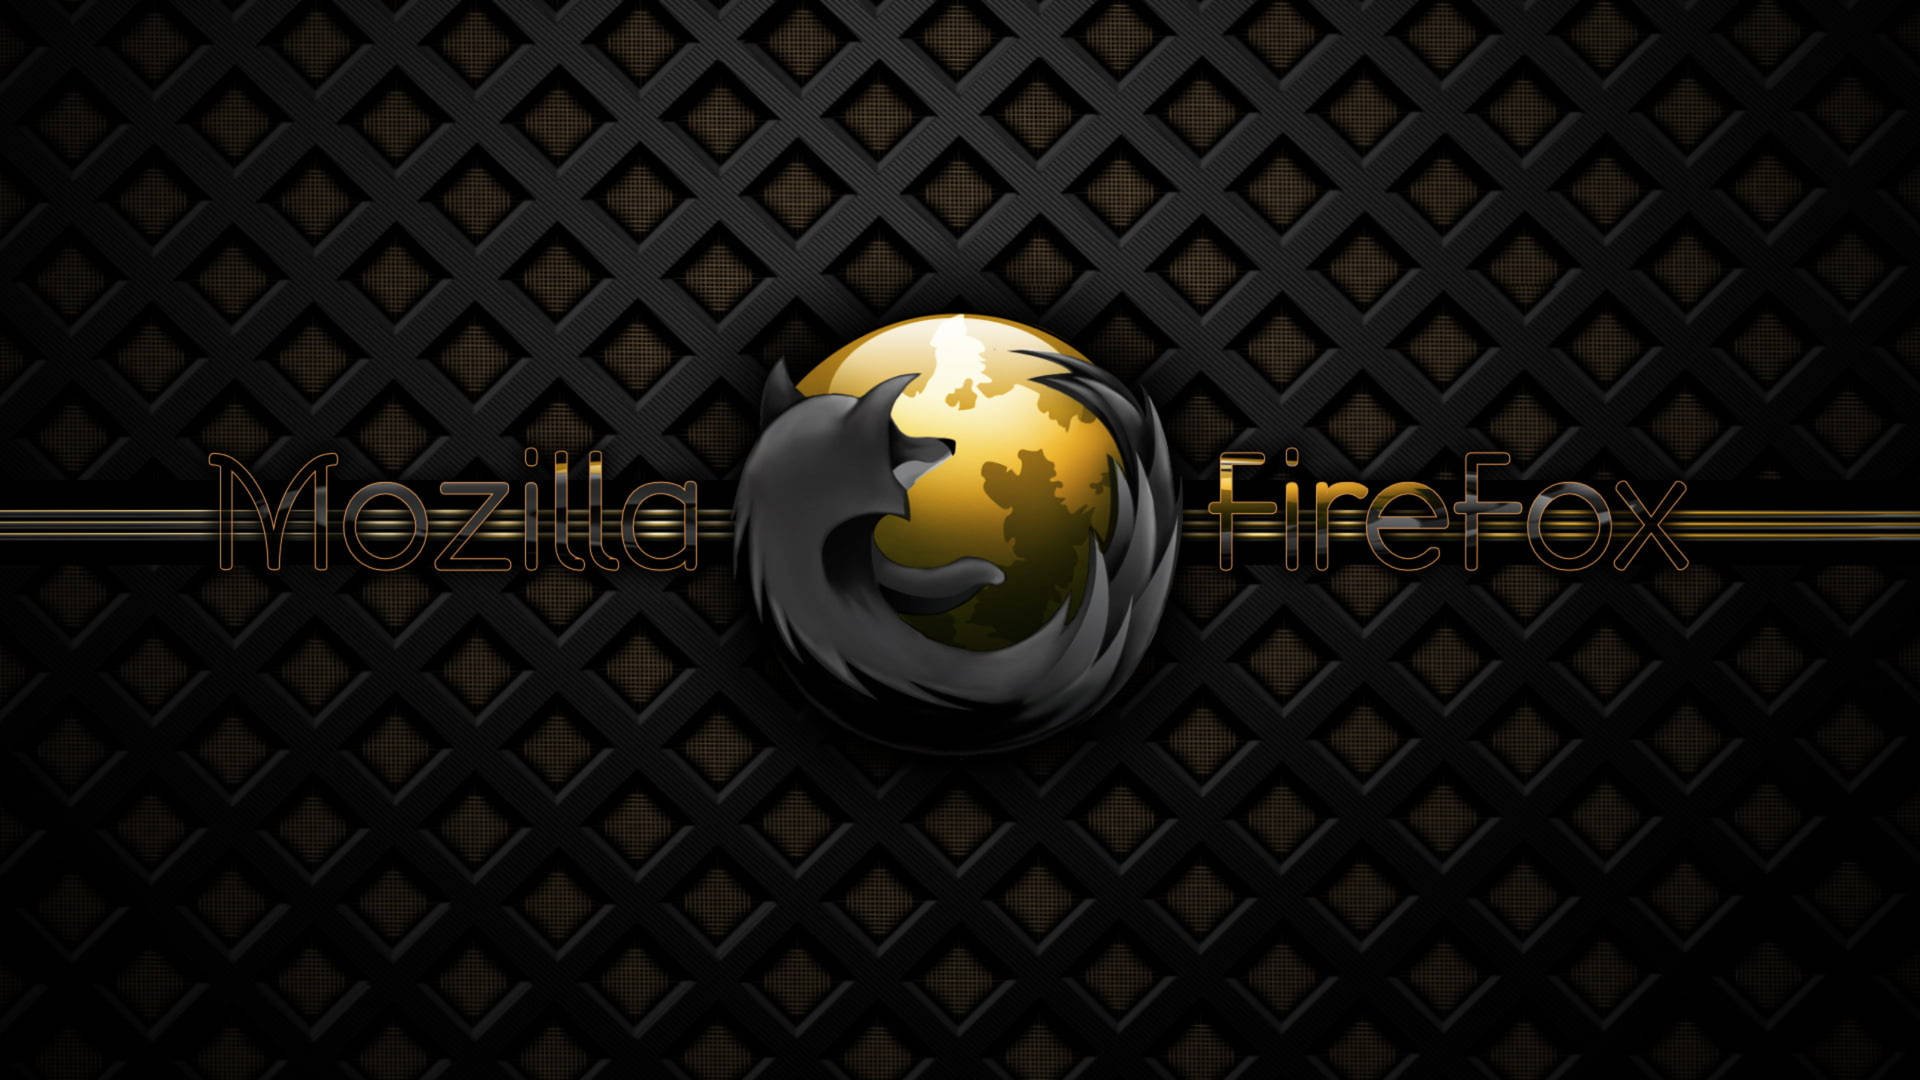 Mozillafirefox Em Preto E Dourado. Papel de Parede